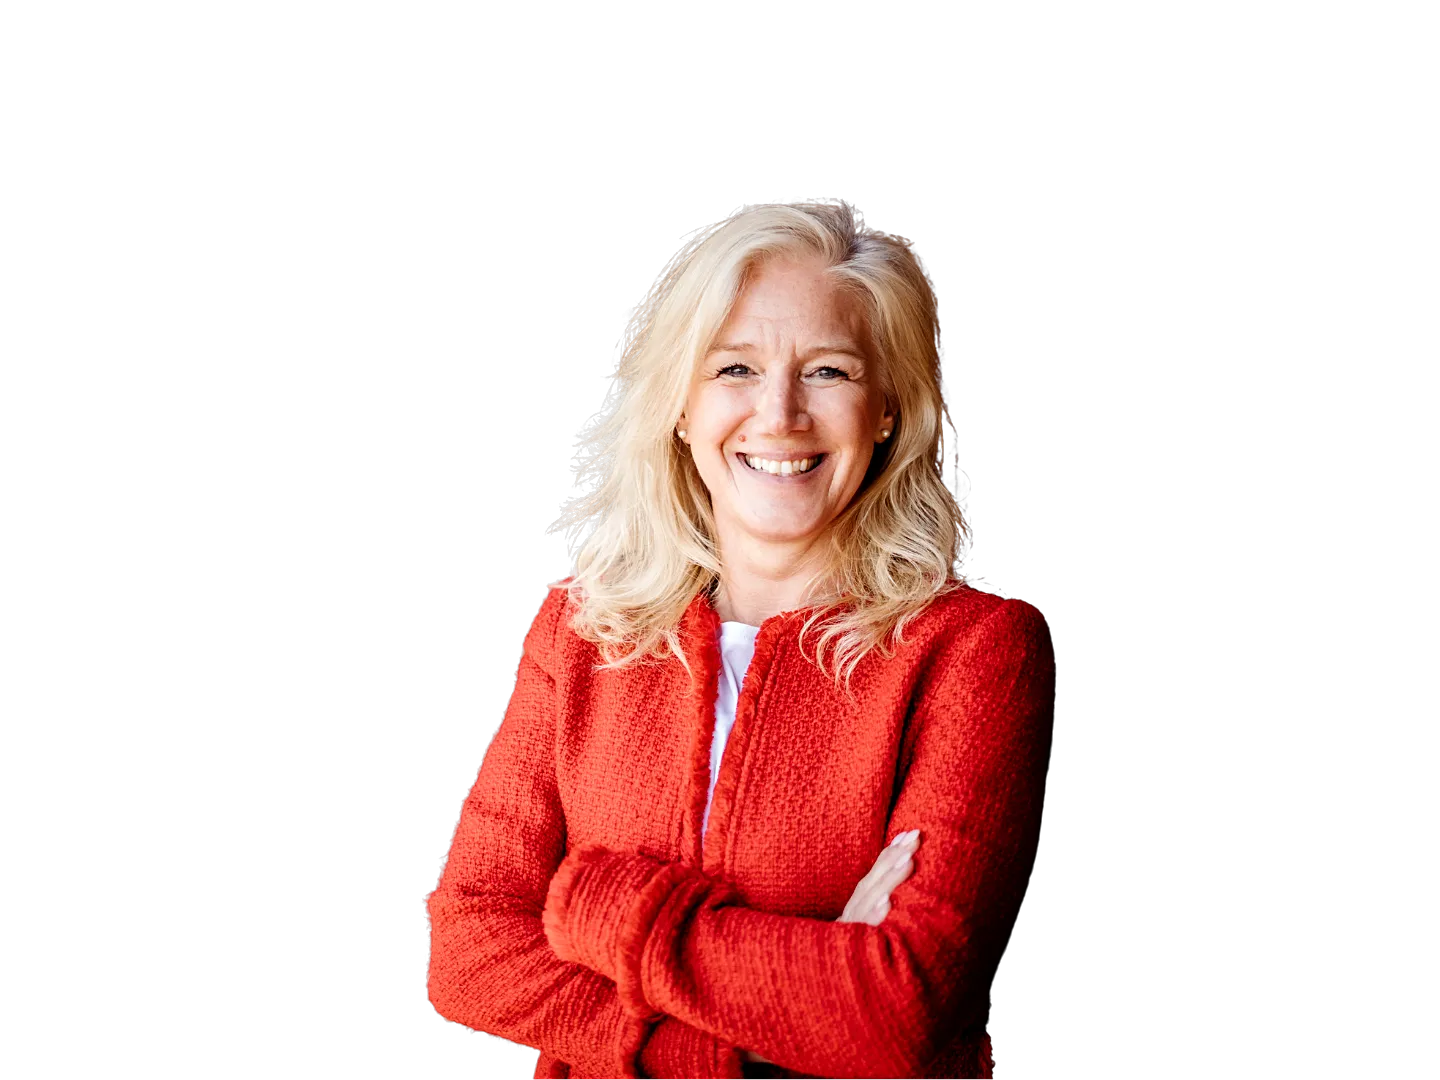 Sabine Kohl mit roter Weste vor transparentem Hintergrund